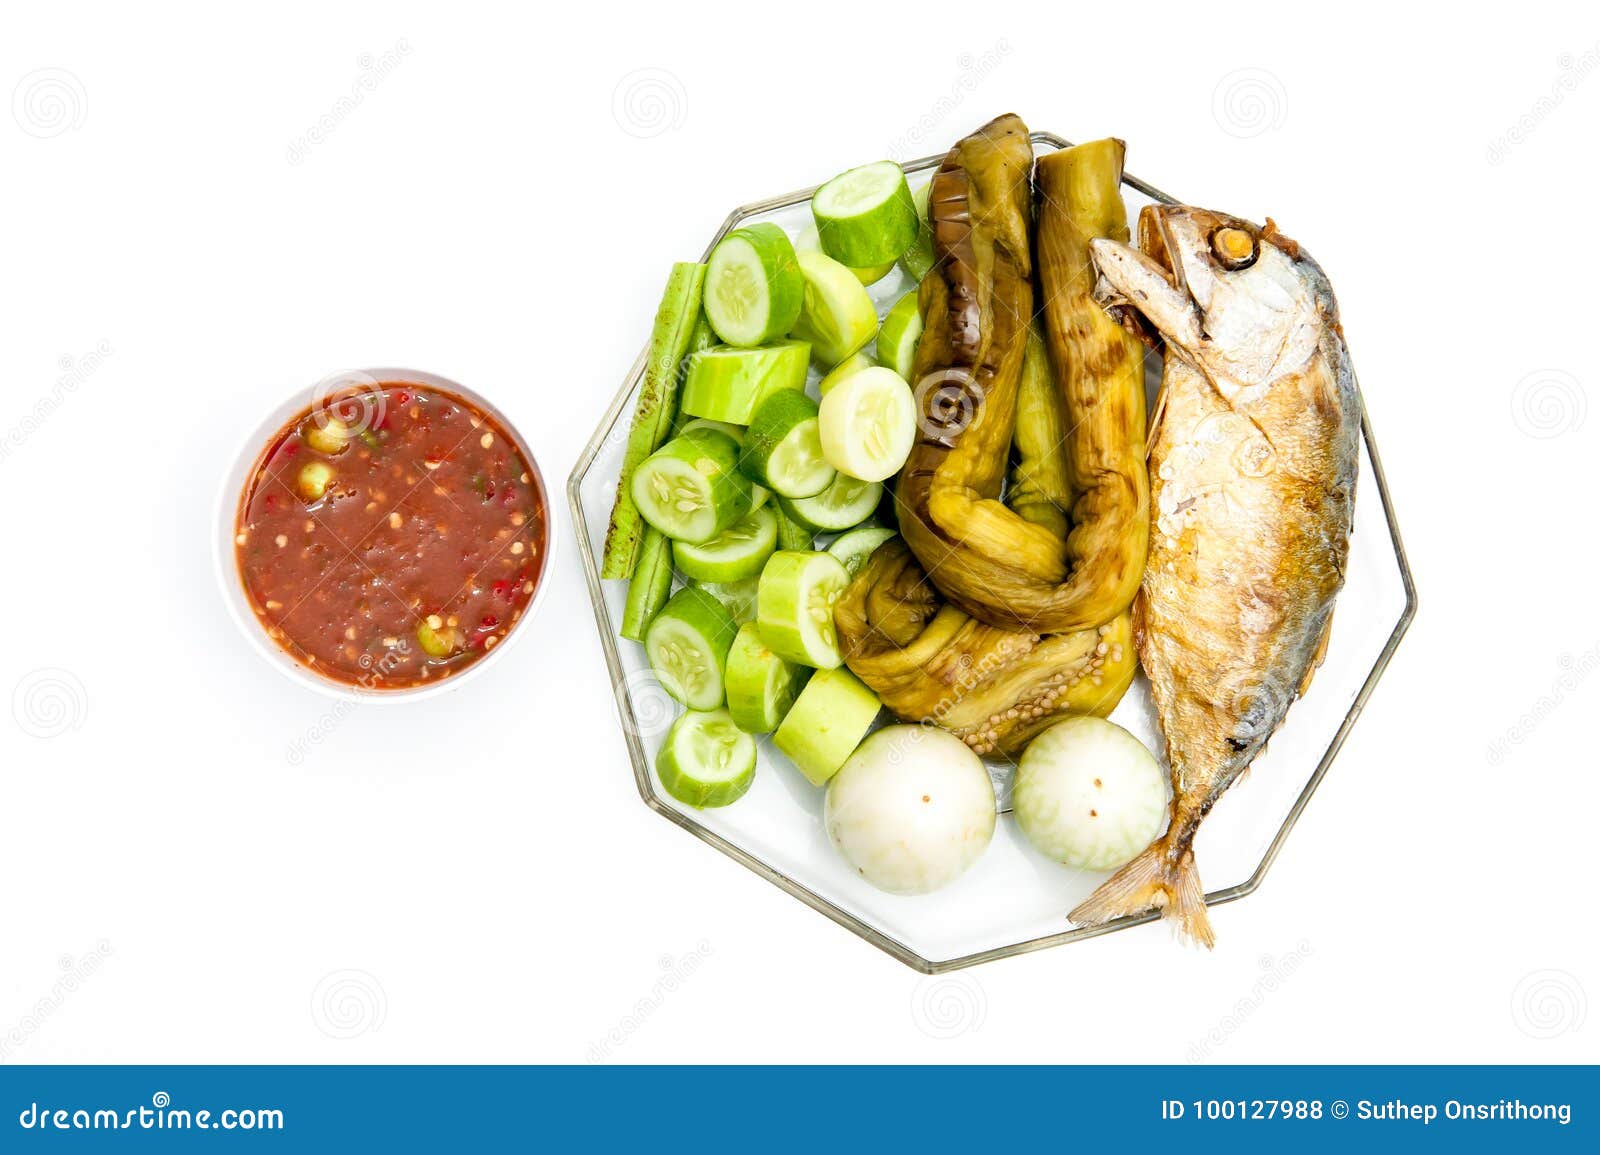 Siamesische Nahrung - Stirfischrogen #6. Thailändisches Lebensmittel, Paprikapaste, Gemüse und Makrele